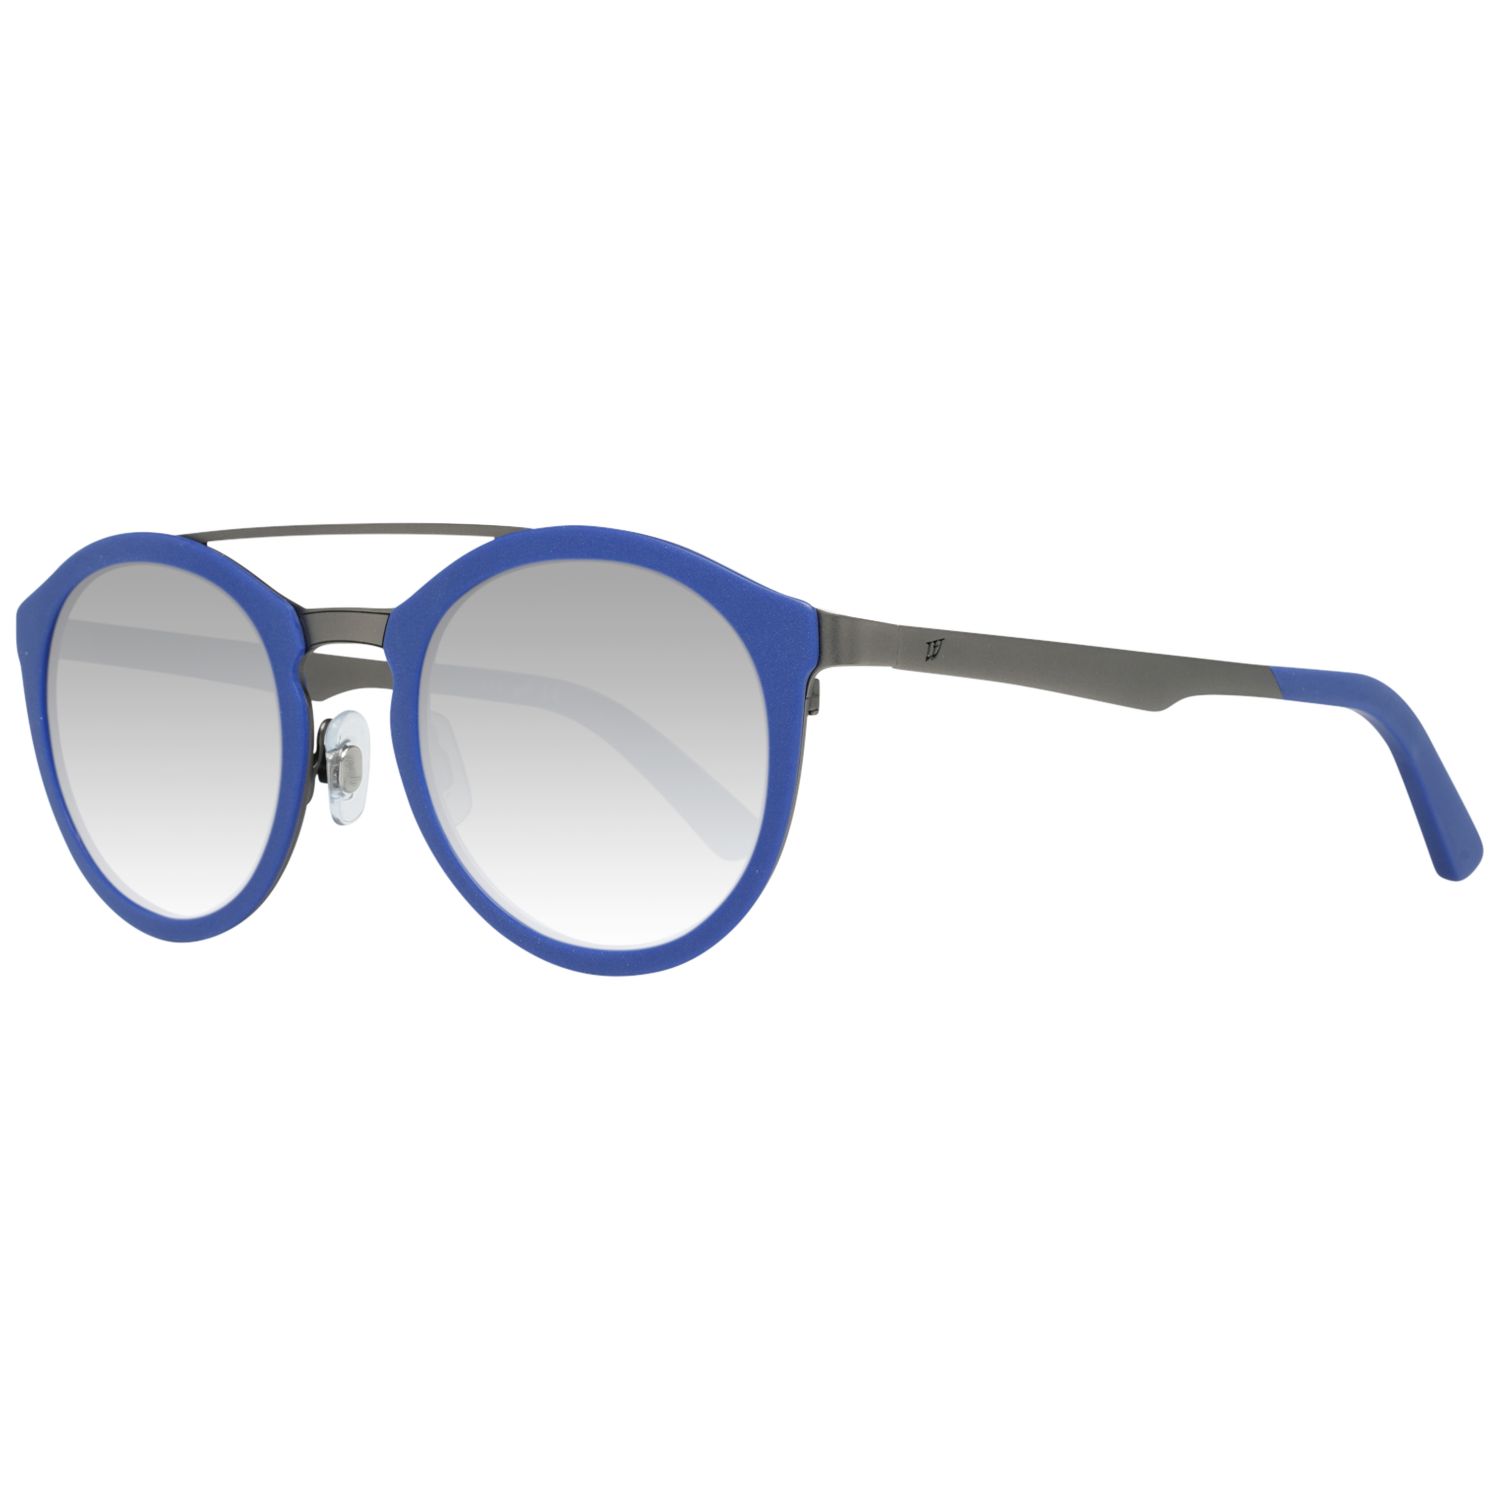 Osta tuote Unisex aurinkolasit Web Eyewear WE0143-4991X Ø 49 mm verkkokaupastamme Korhone: Muoti & Asusteet 10% alennuksella koodilla KORHONE